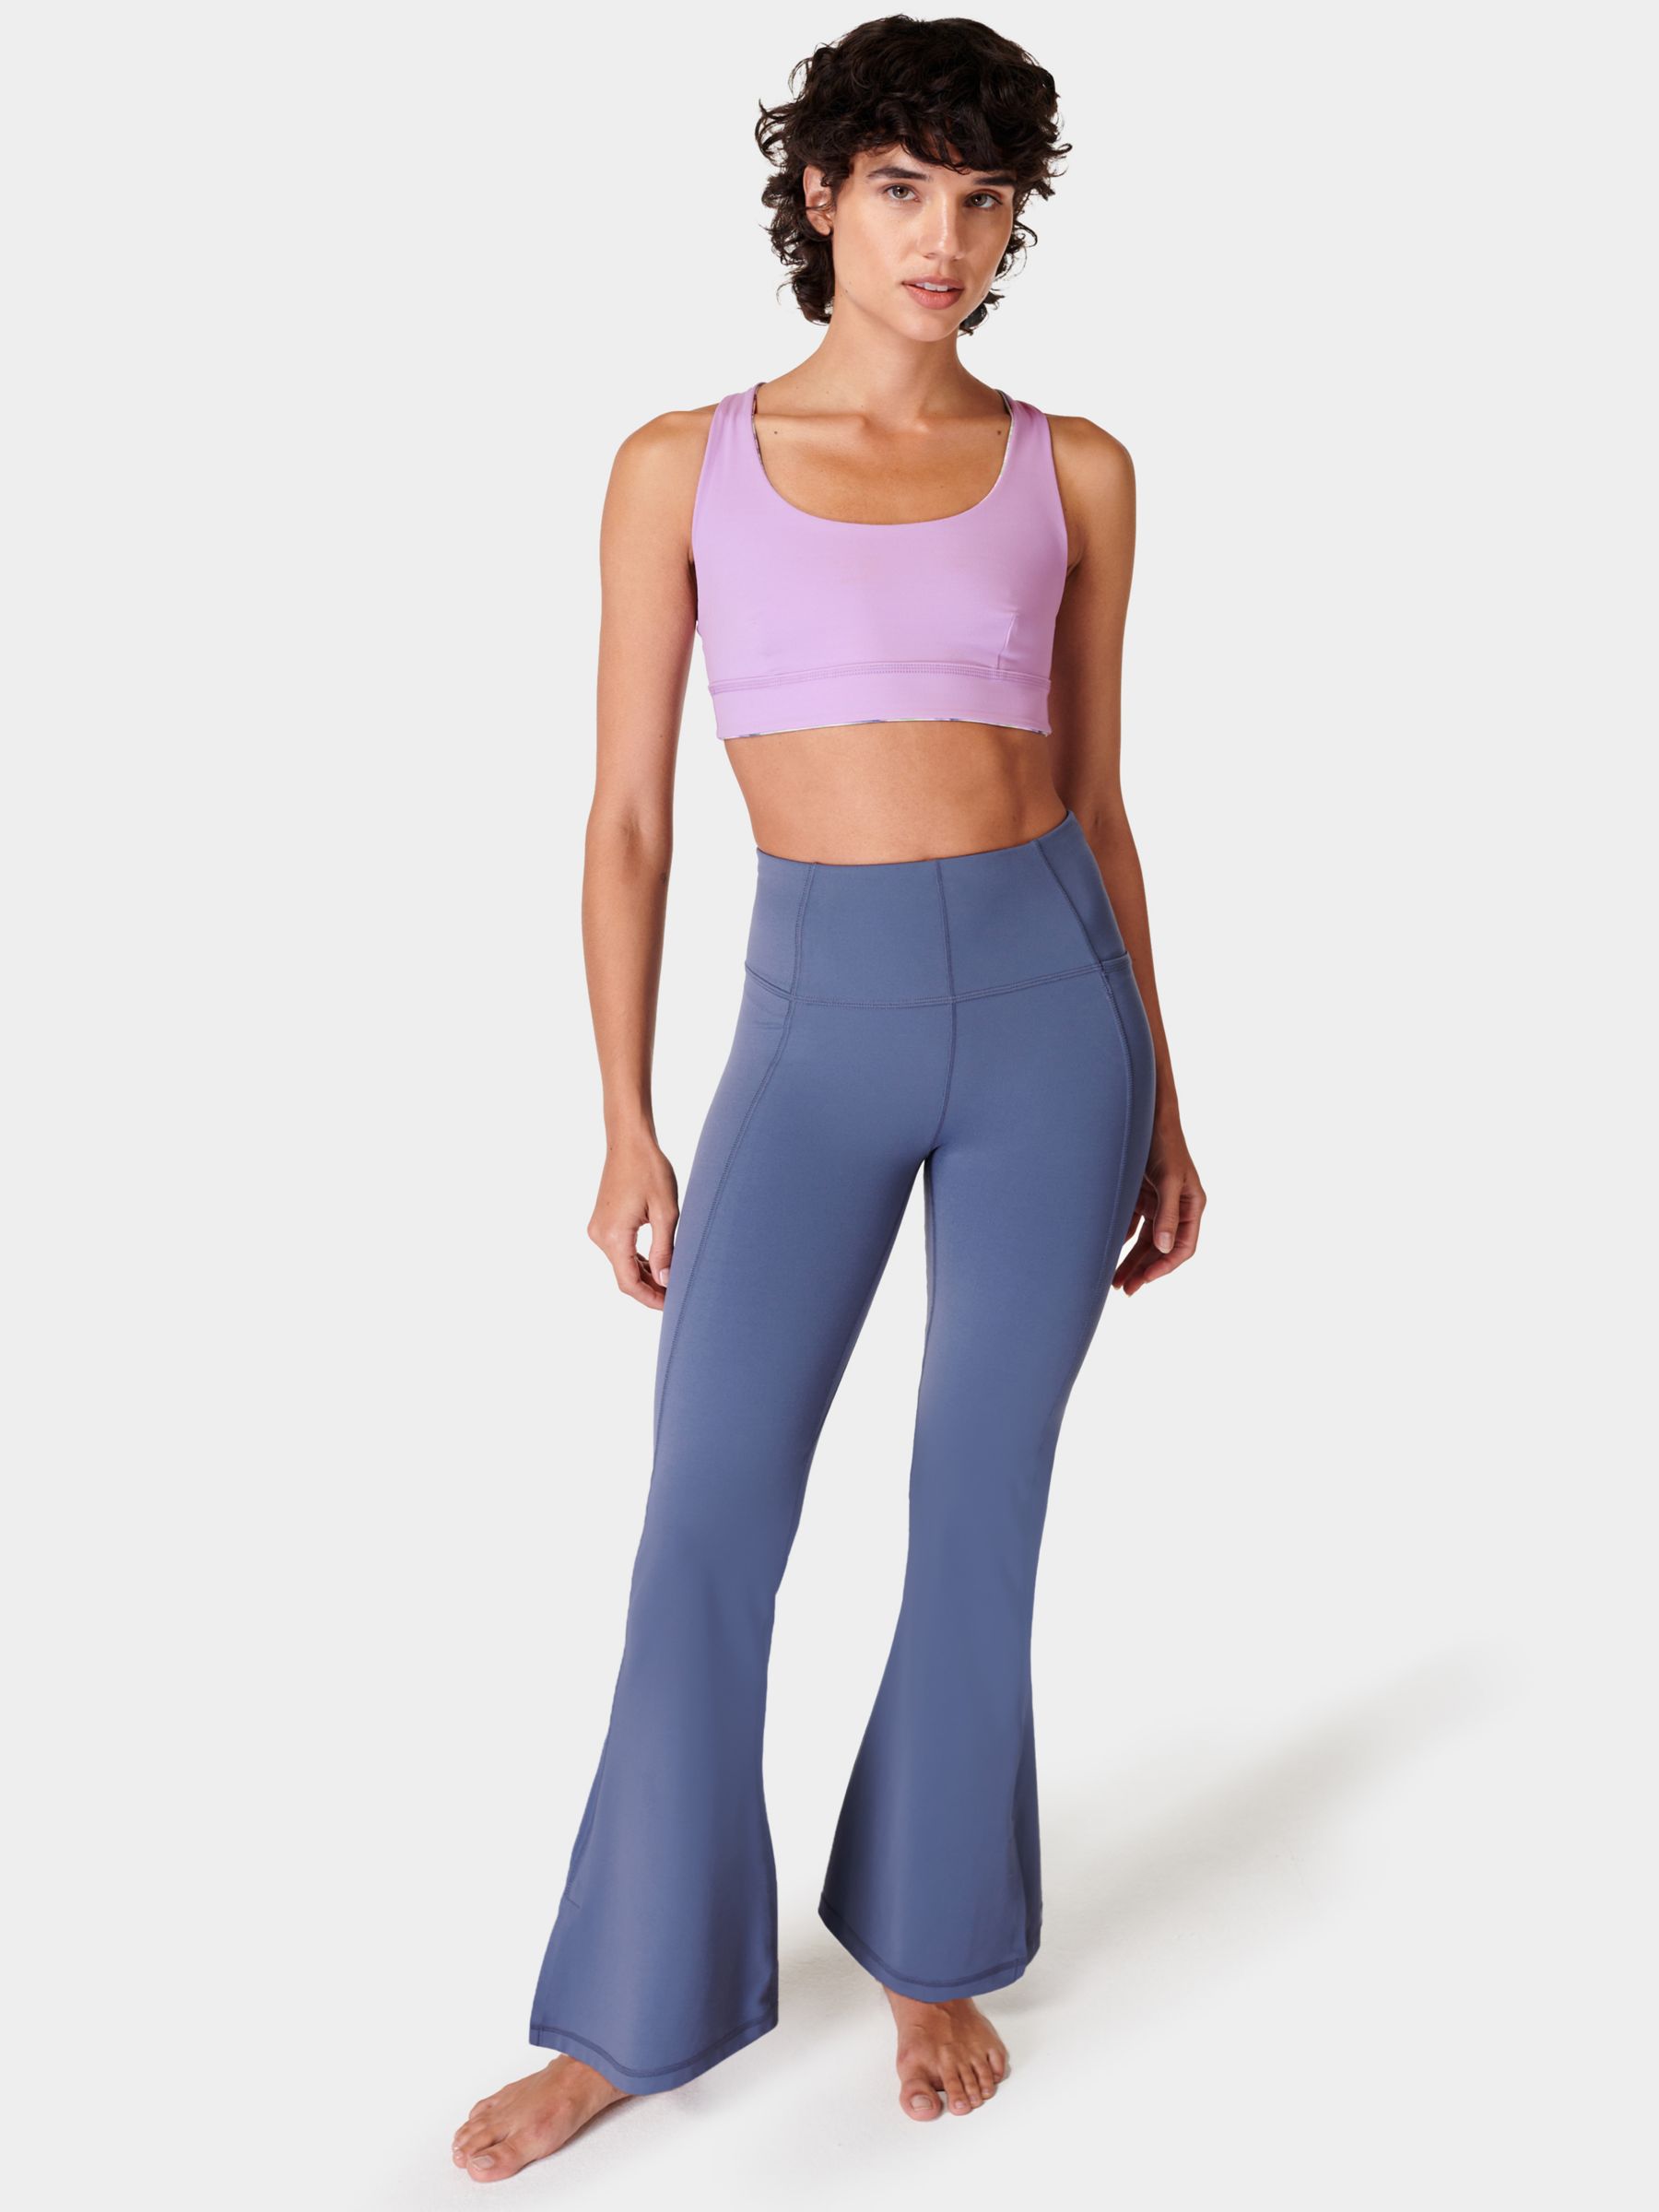 Sweaty Betty 30" Super Soft Yoga Trousers, Endless Blue, XS